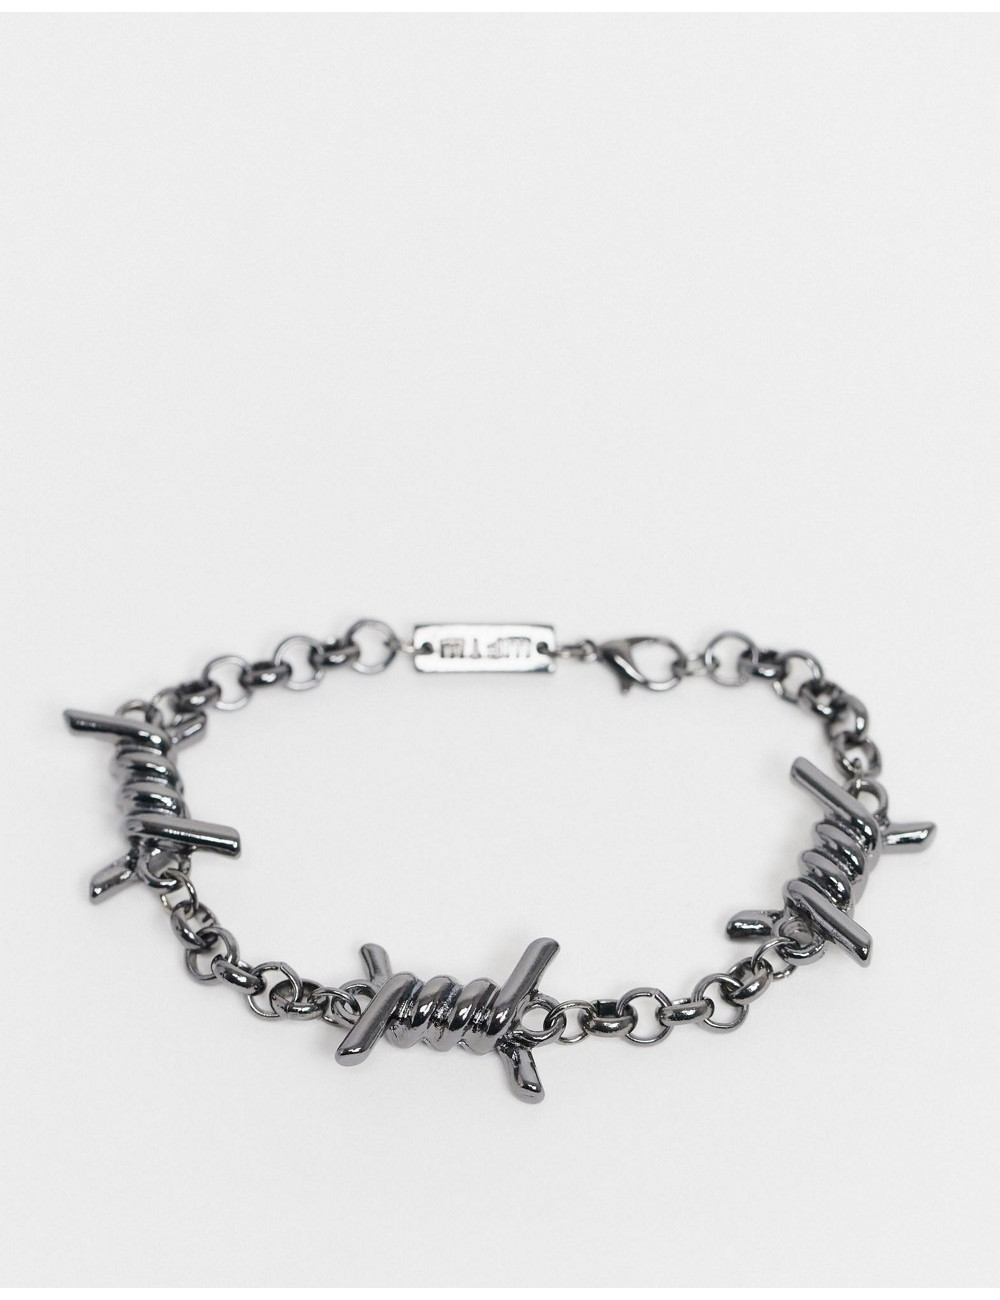 WFTW chain bracelet in...